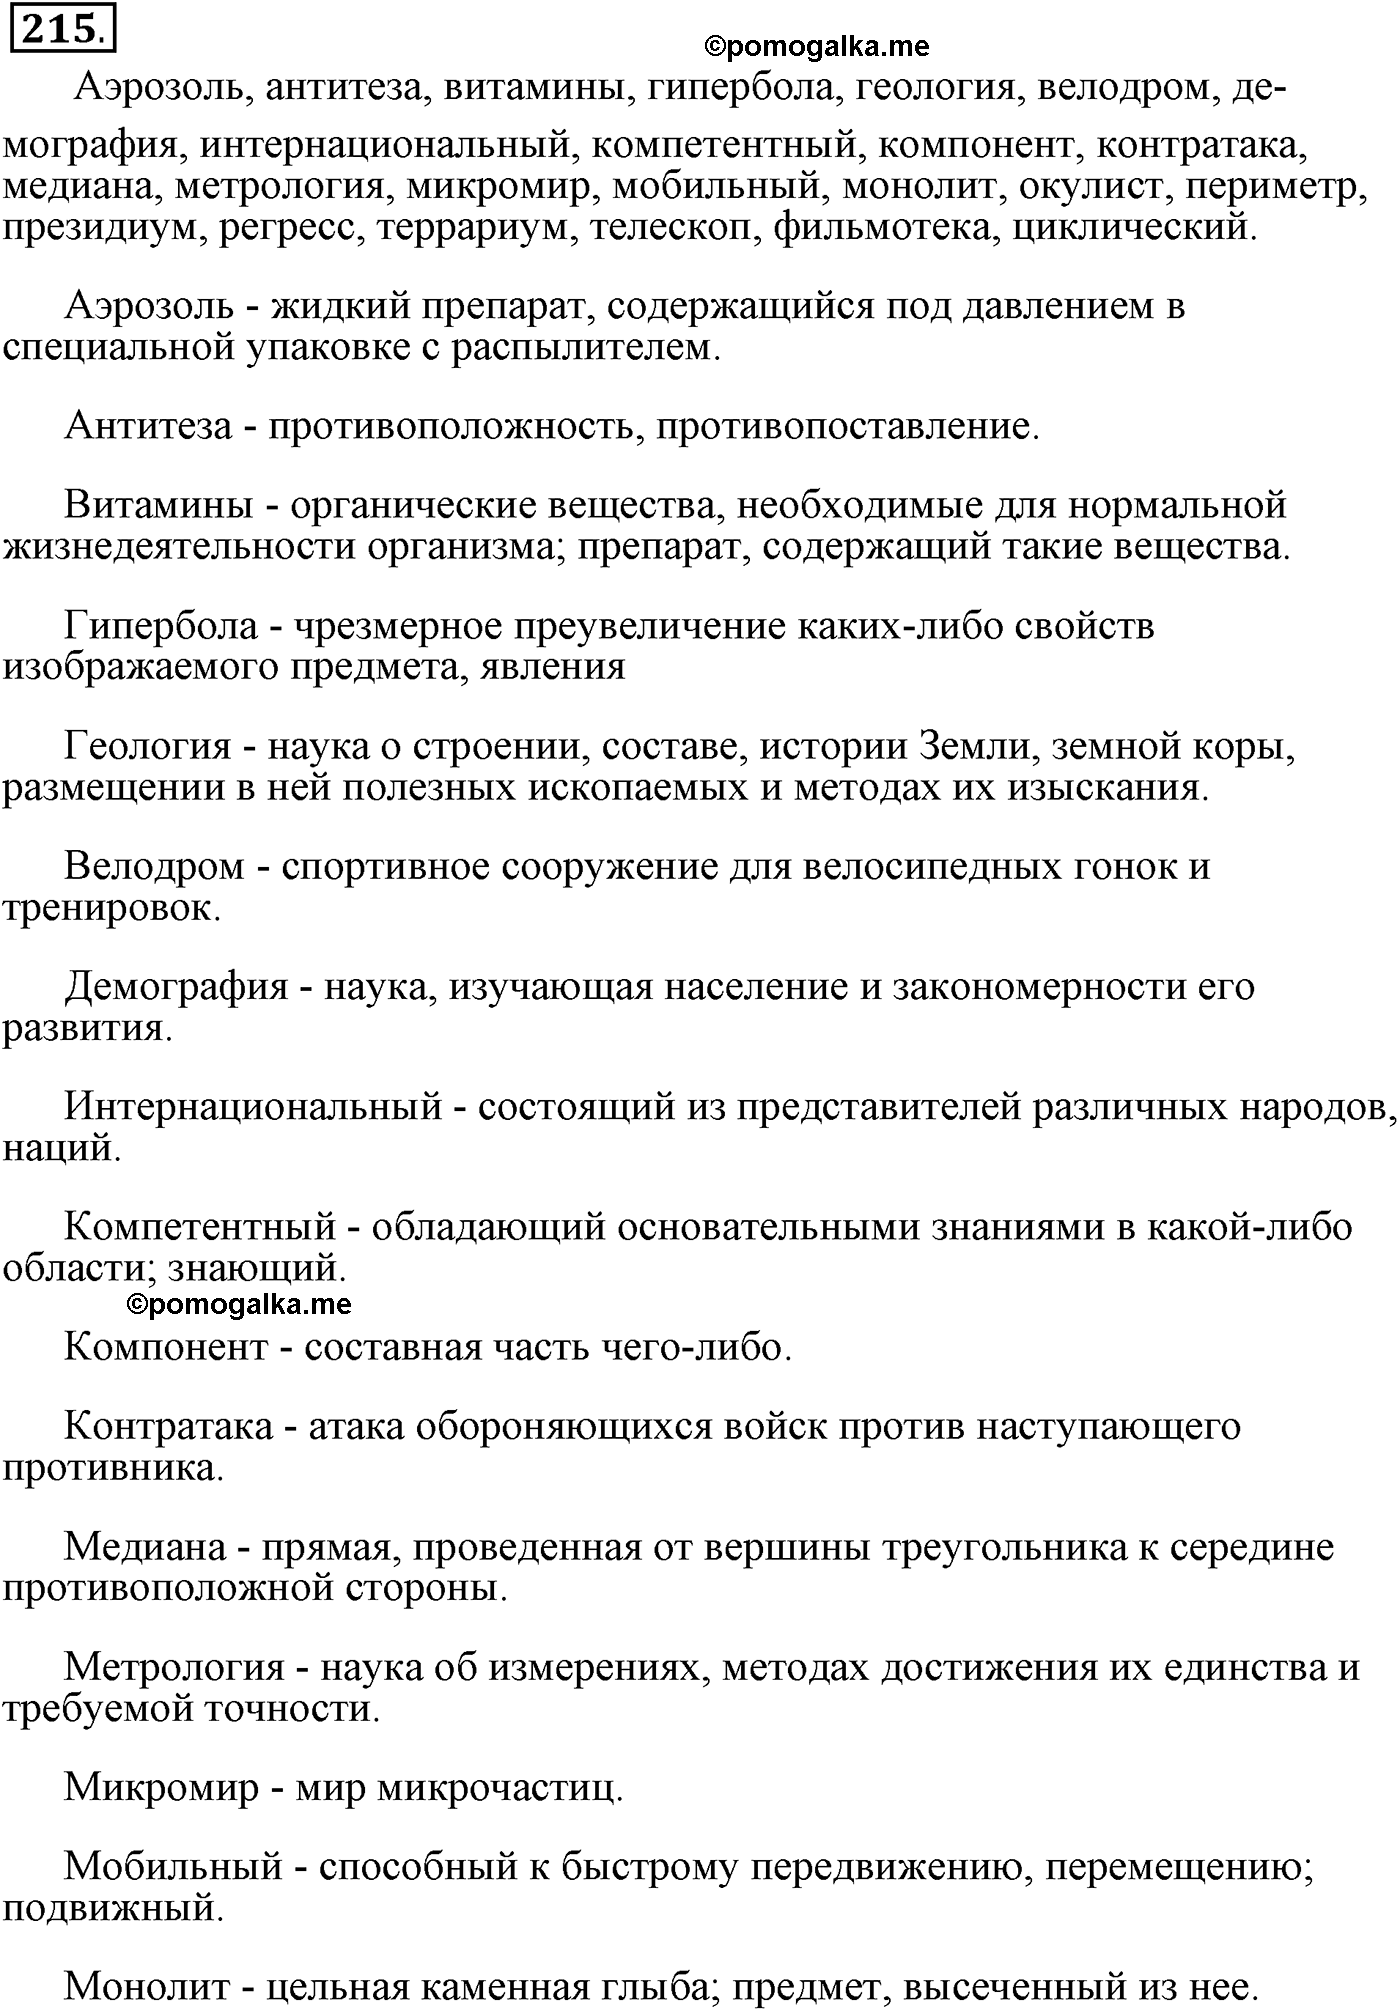 упражнение №215 русский язык 9 класс Пичугов